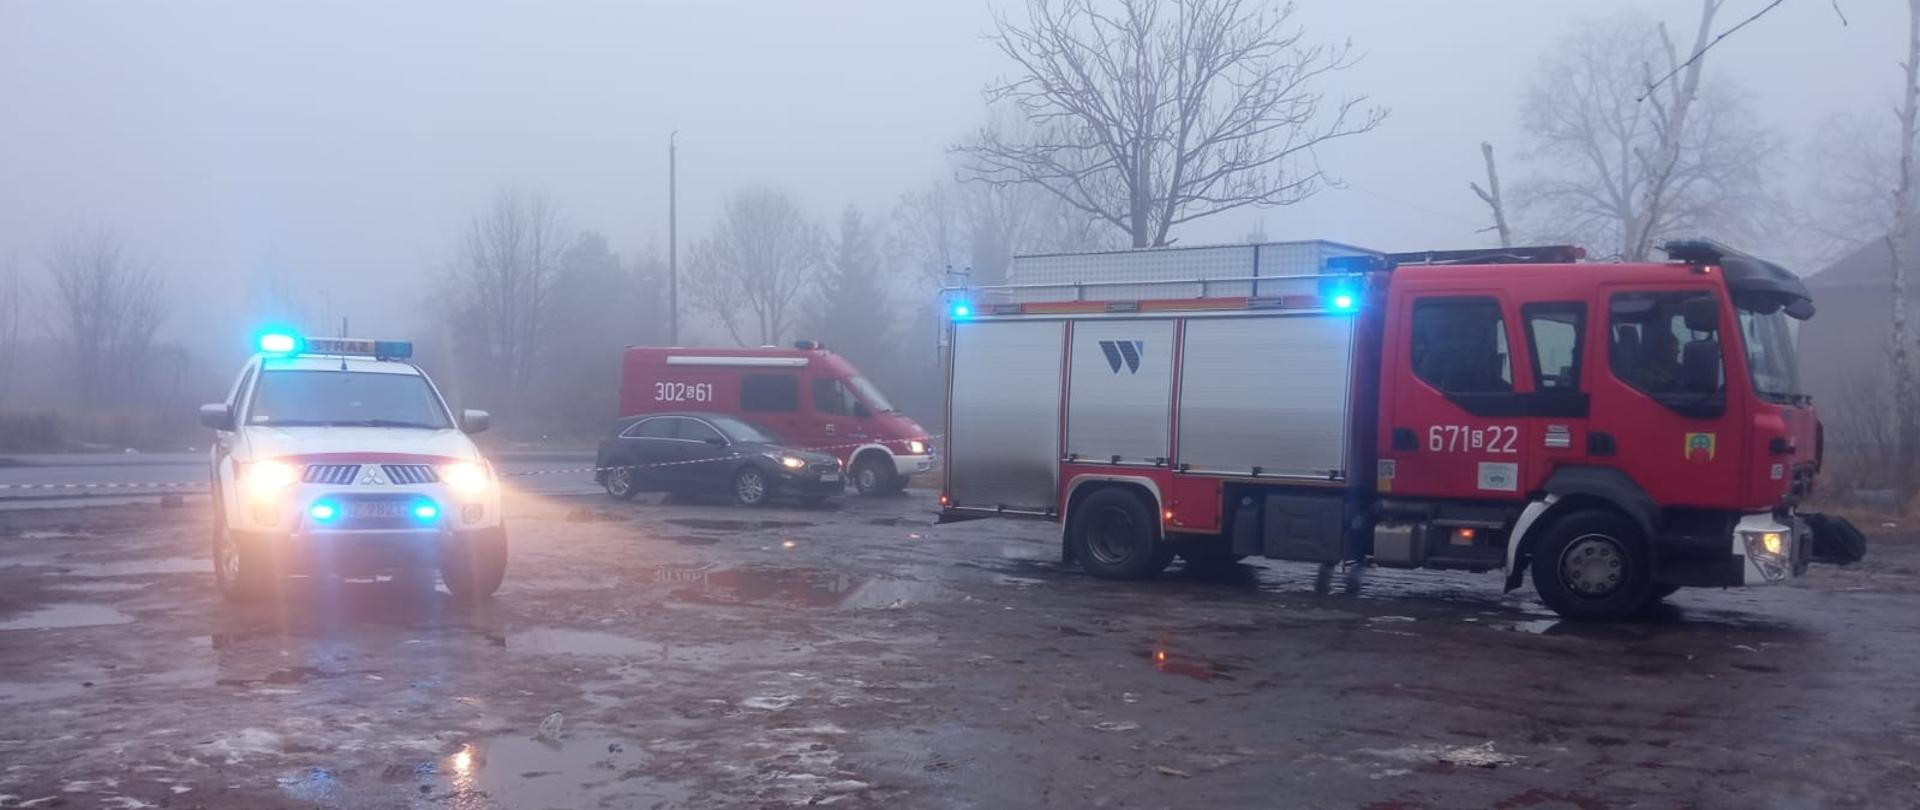 Pojazdy pożarnicze zabezpieczające miejsce zdarzenia w trakcie działań strażaków związanych z identyfikacją nieznanej substancji